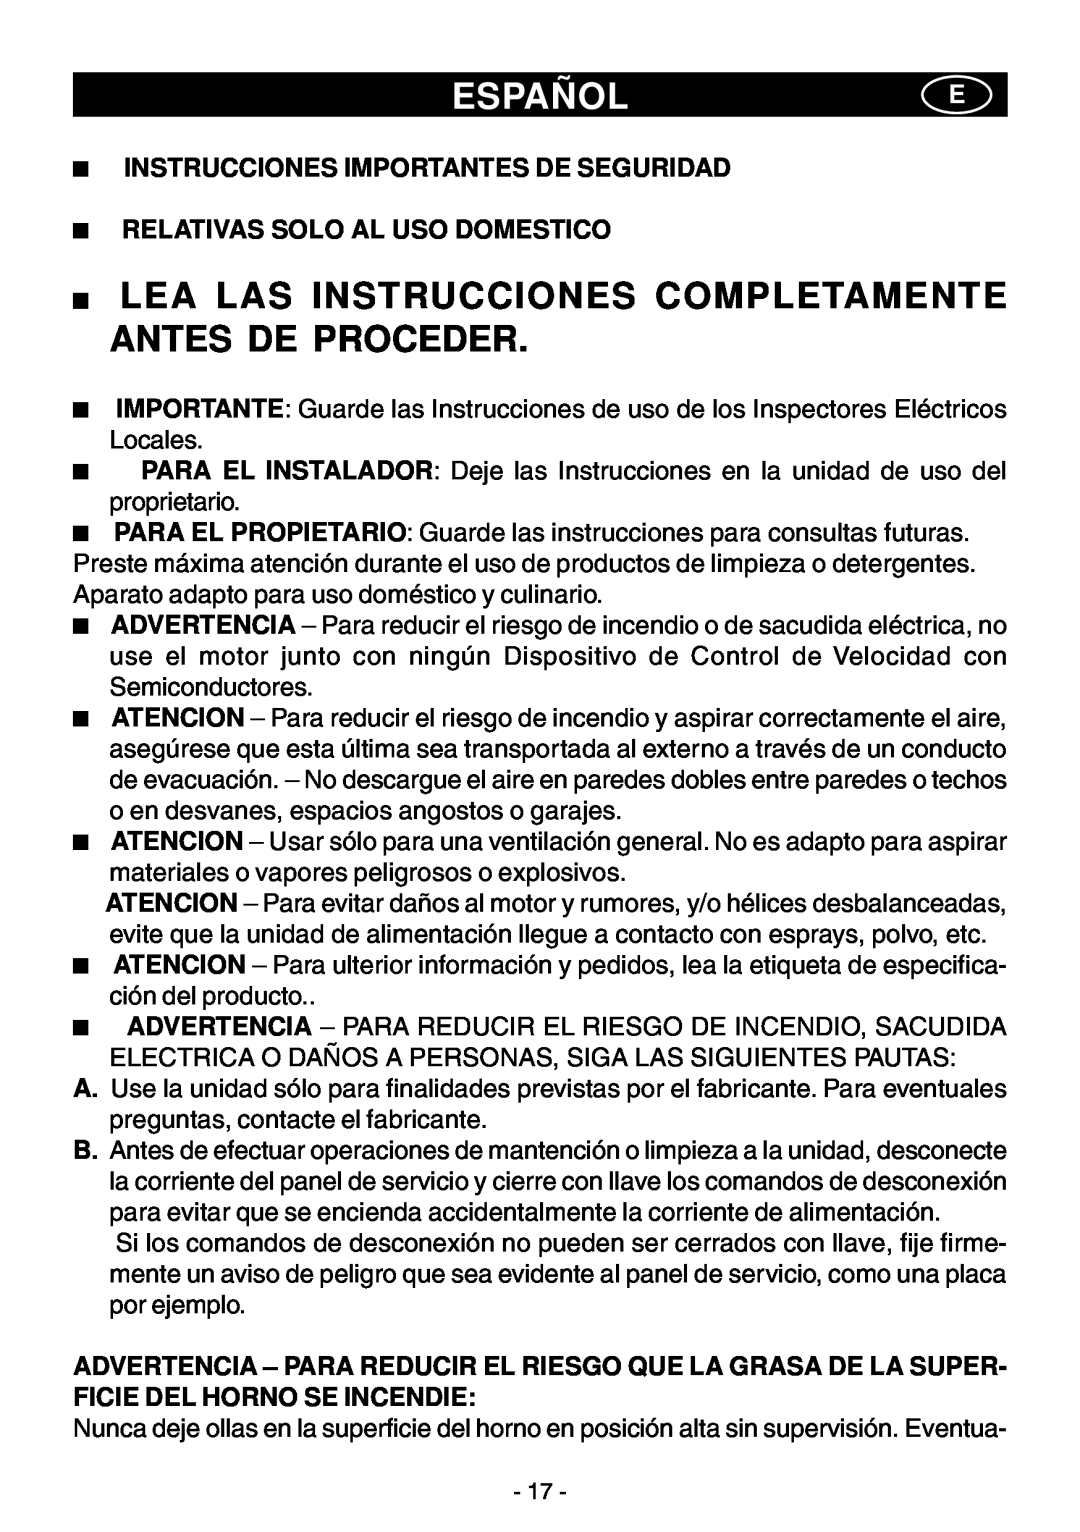 Elitair ZN-36 Españole, Lea Las Instrucciones Completamente Antes De Proceder, Instrucciones Importantes De Seguridad 